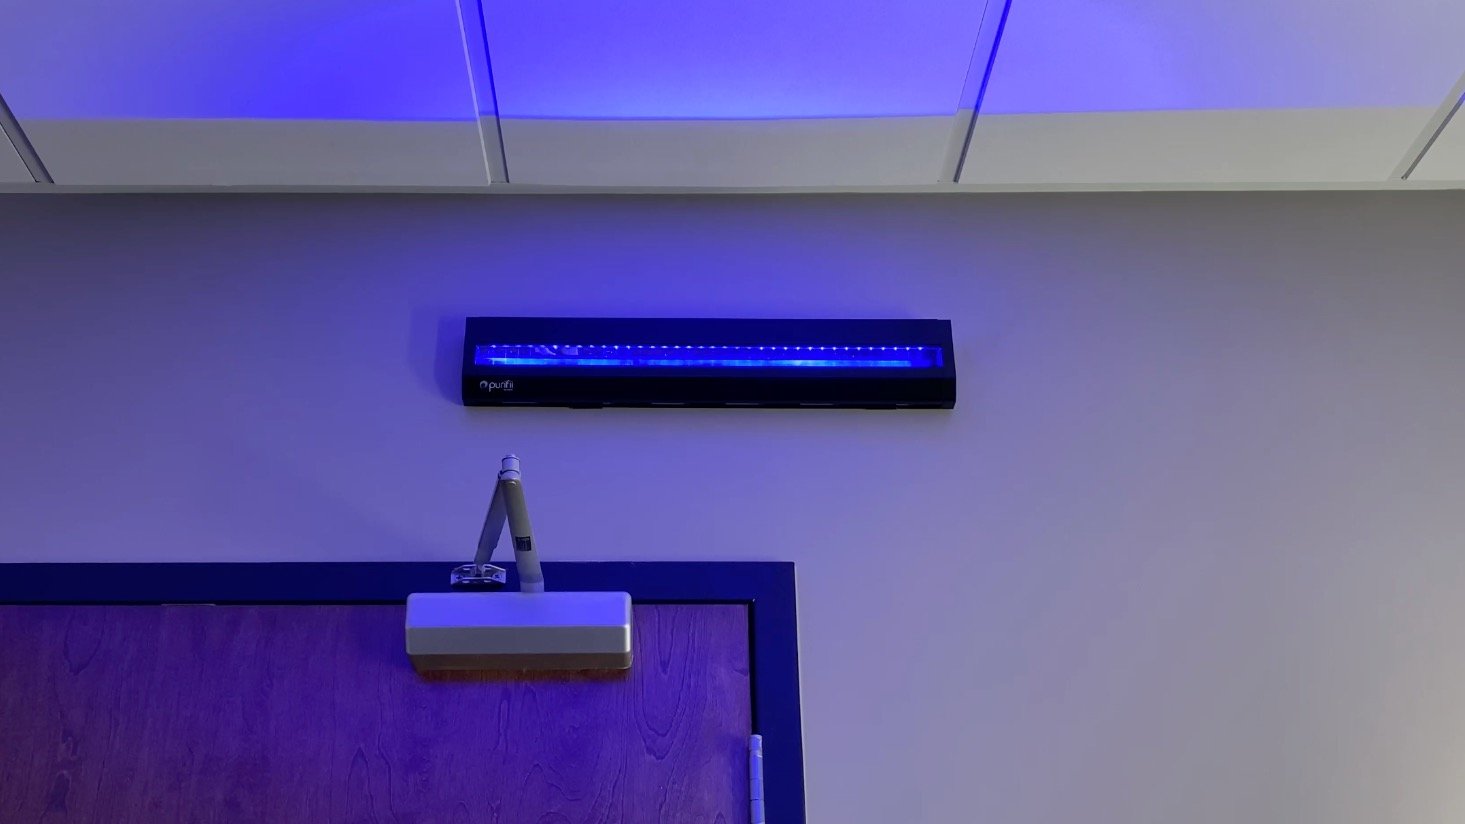 to tell if UV-C LEDs